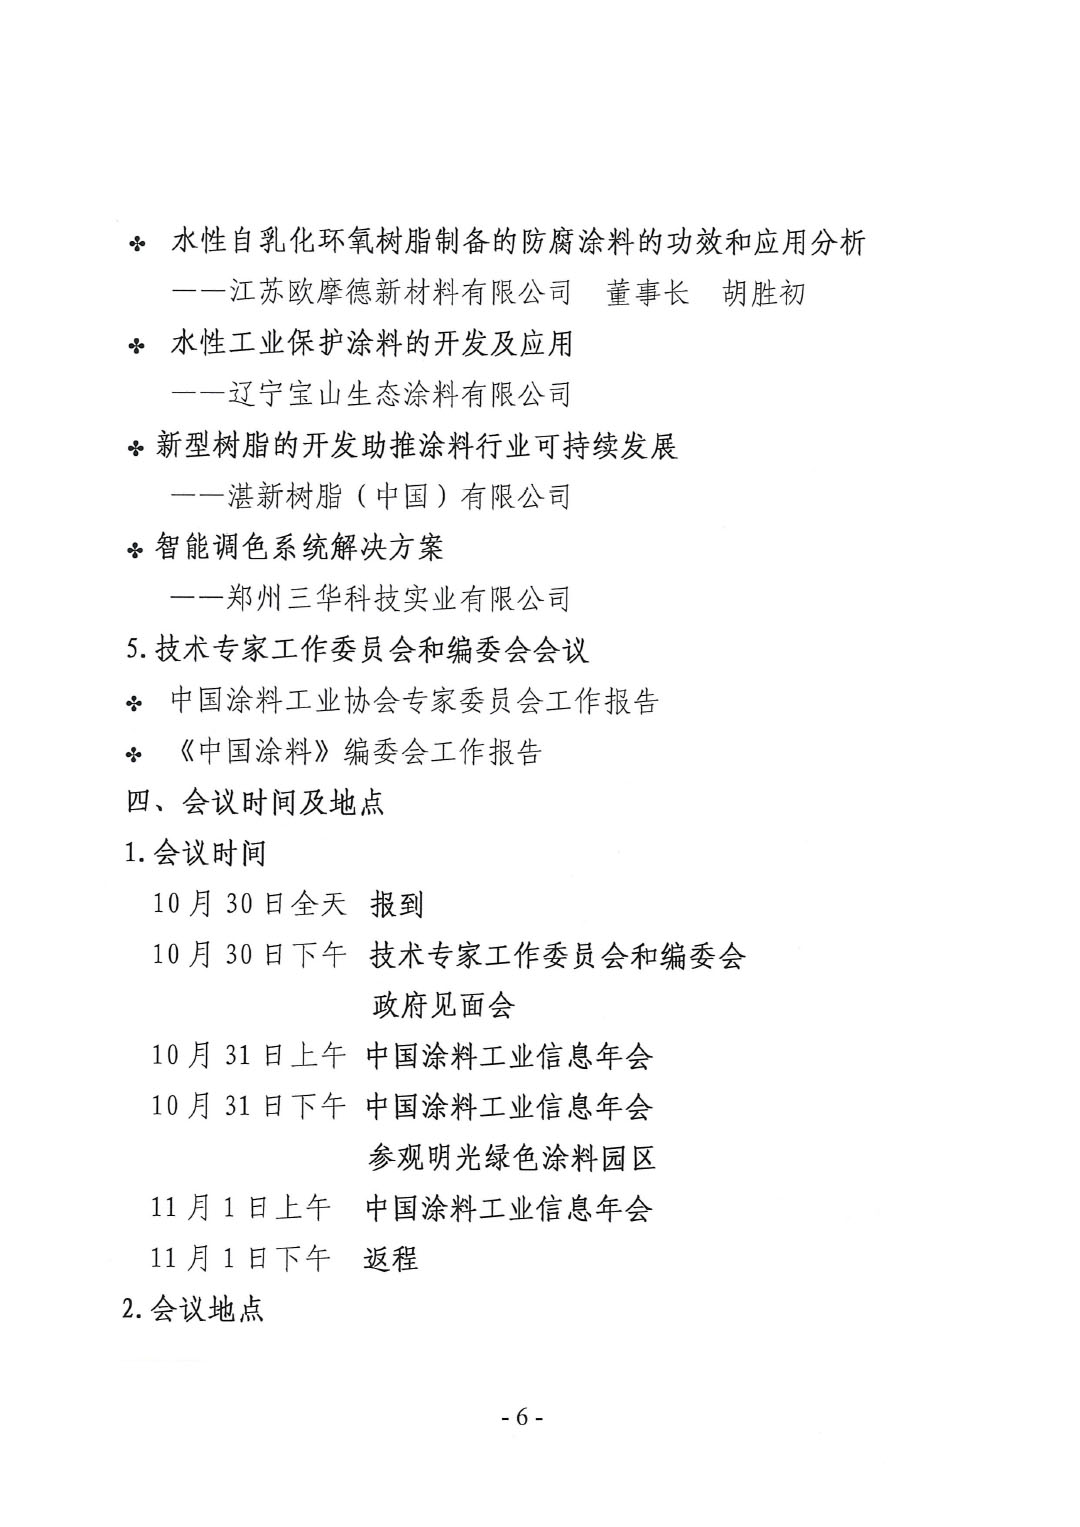 2023年中国涂料工业信息年会通知（明光）1017-6